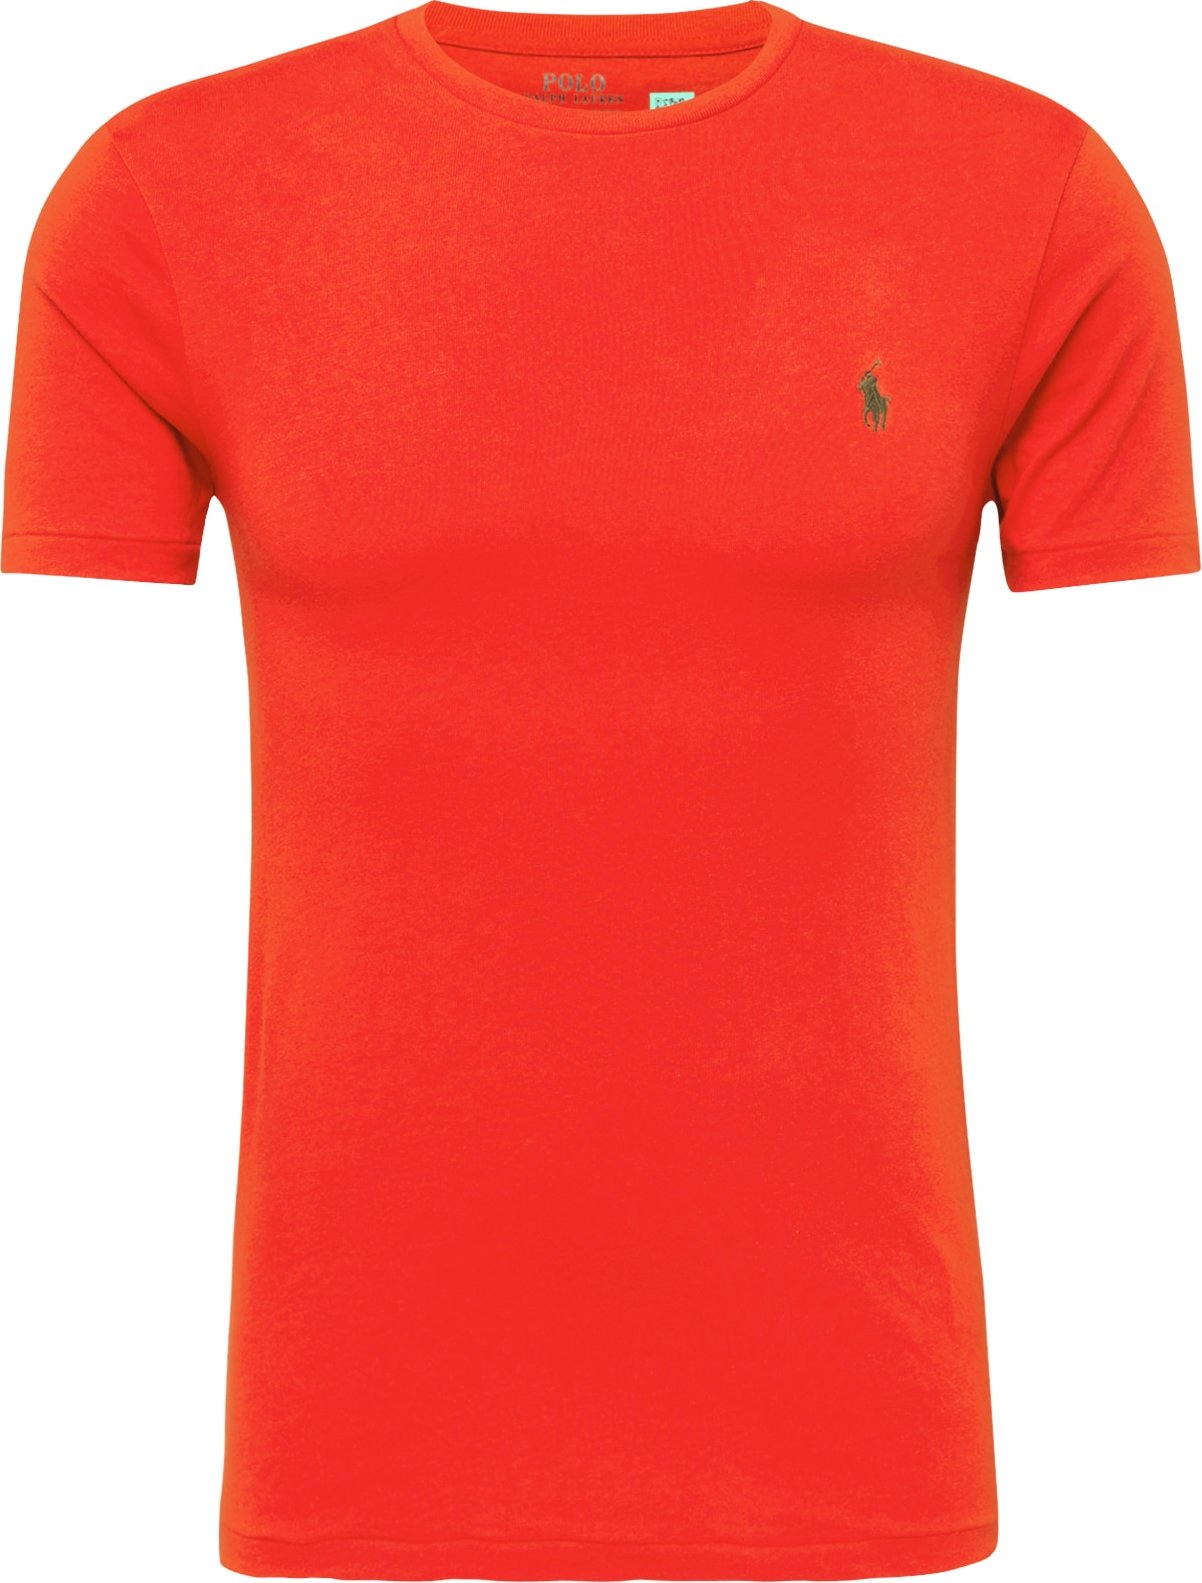 Tričko Polo Ralph Lauren olivová / oranžově červená